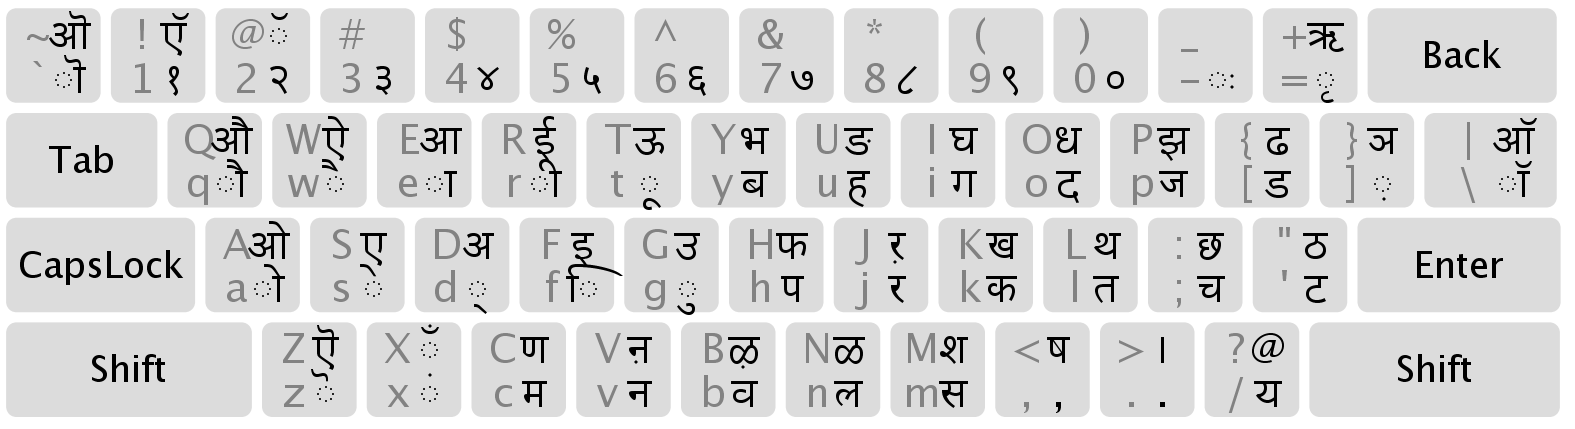 Клавиатурные раскладка для деванагари